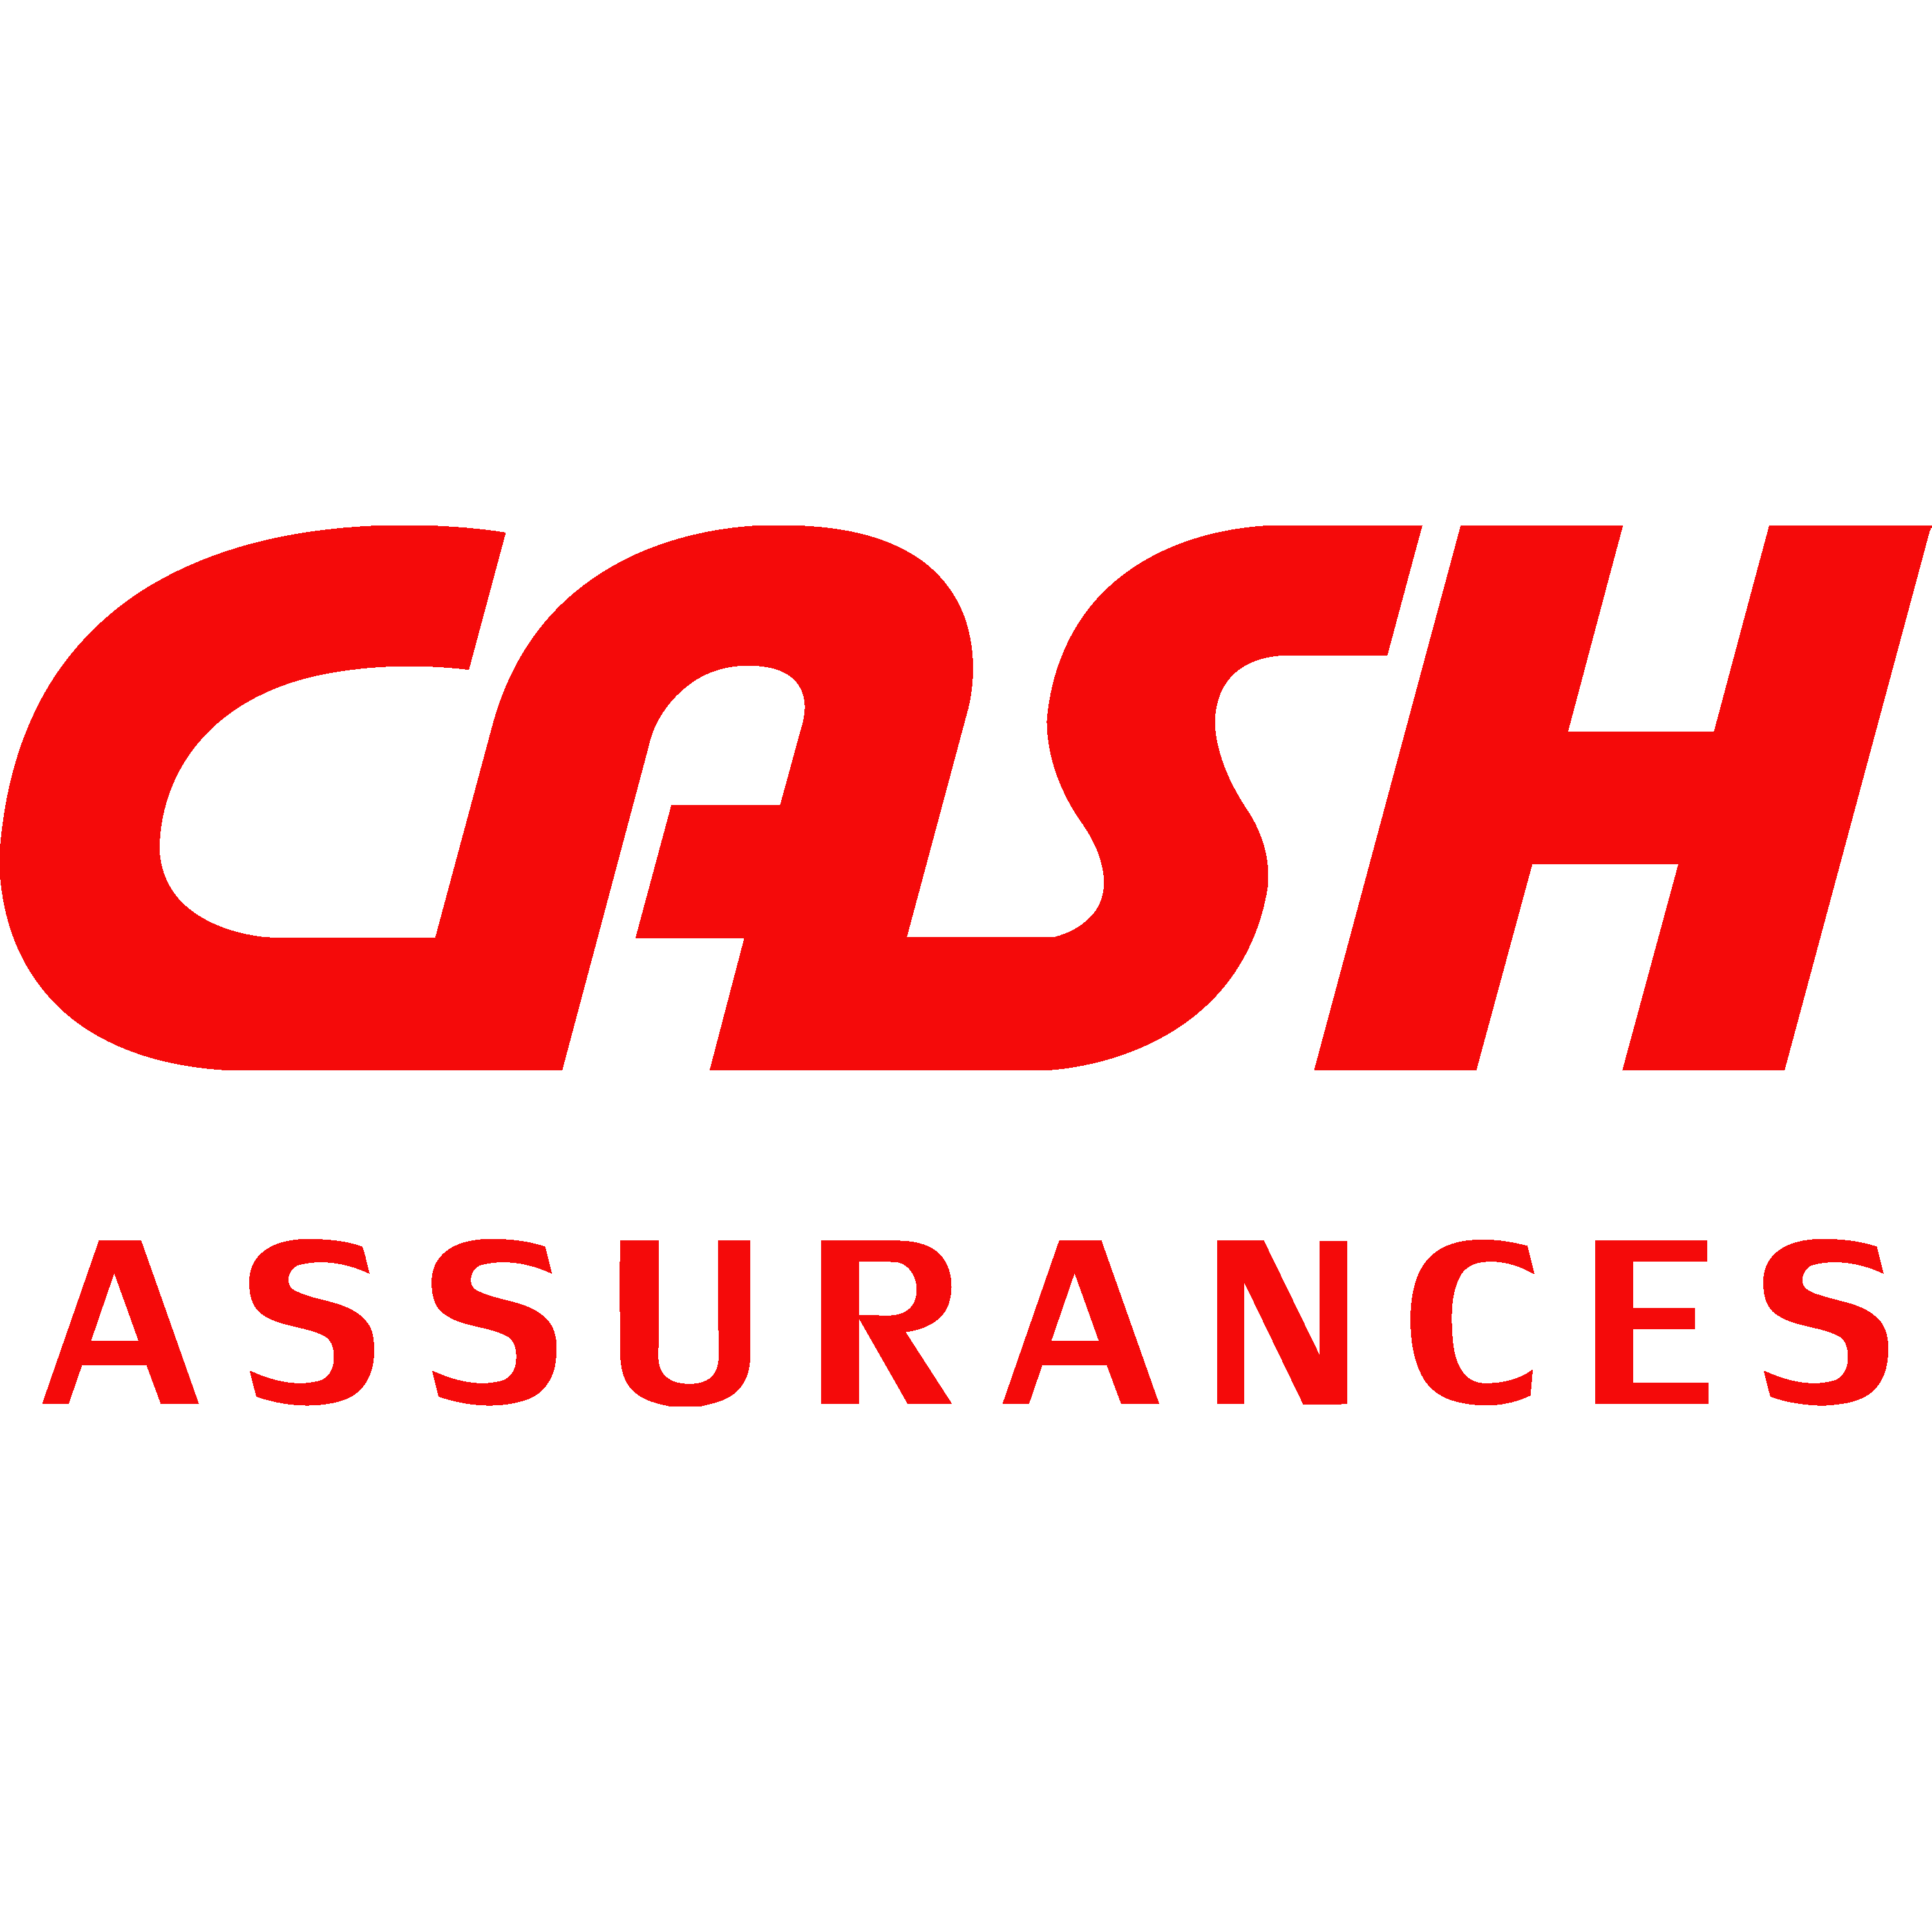 Cash Assurances Logo Transparent Picture